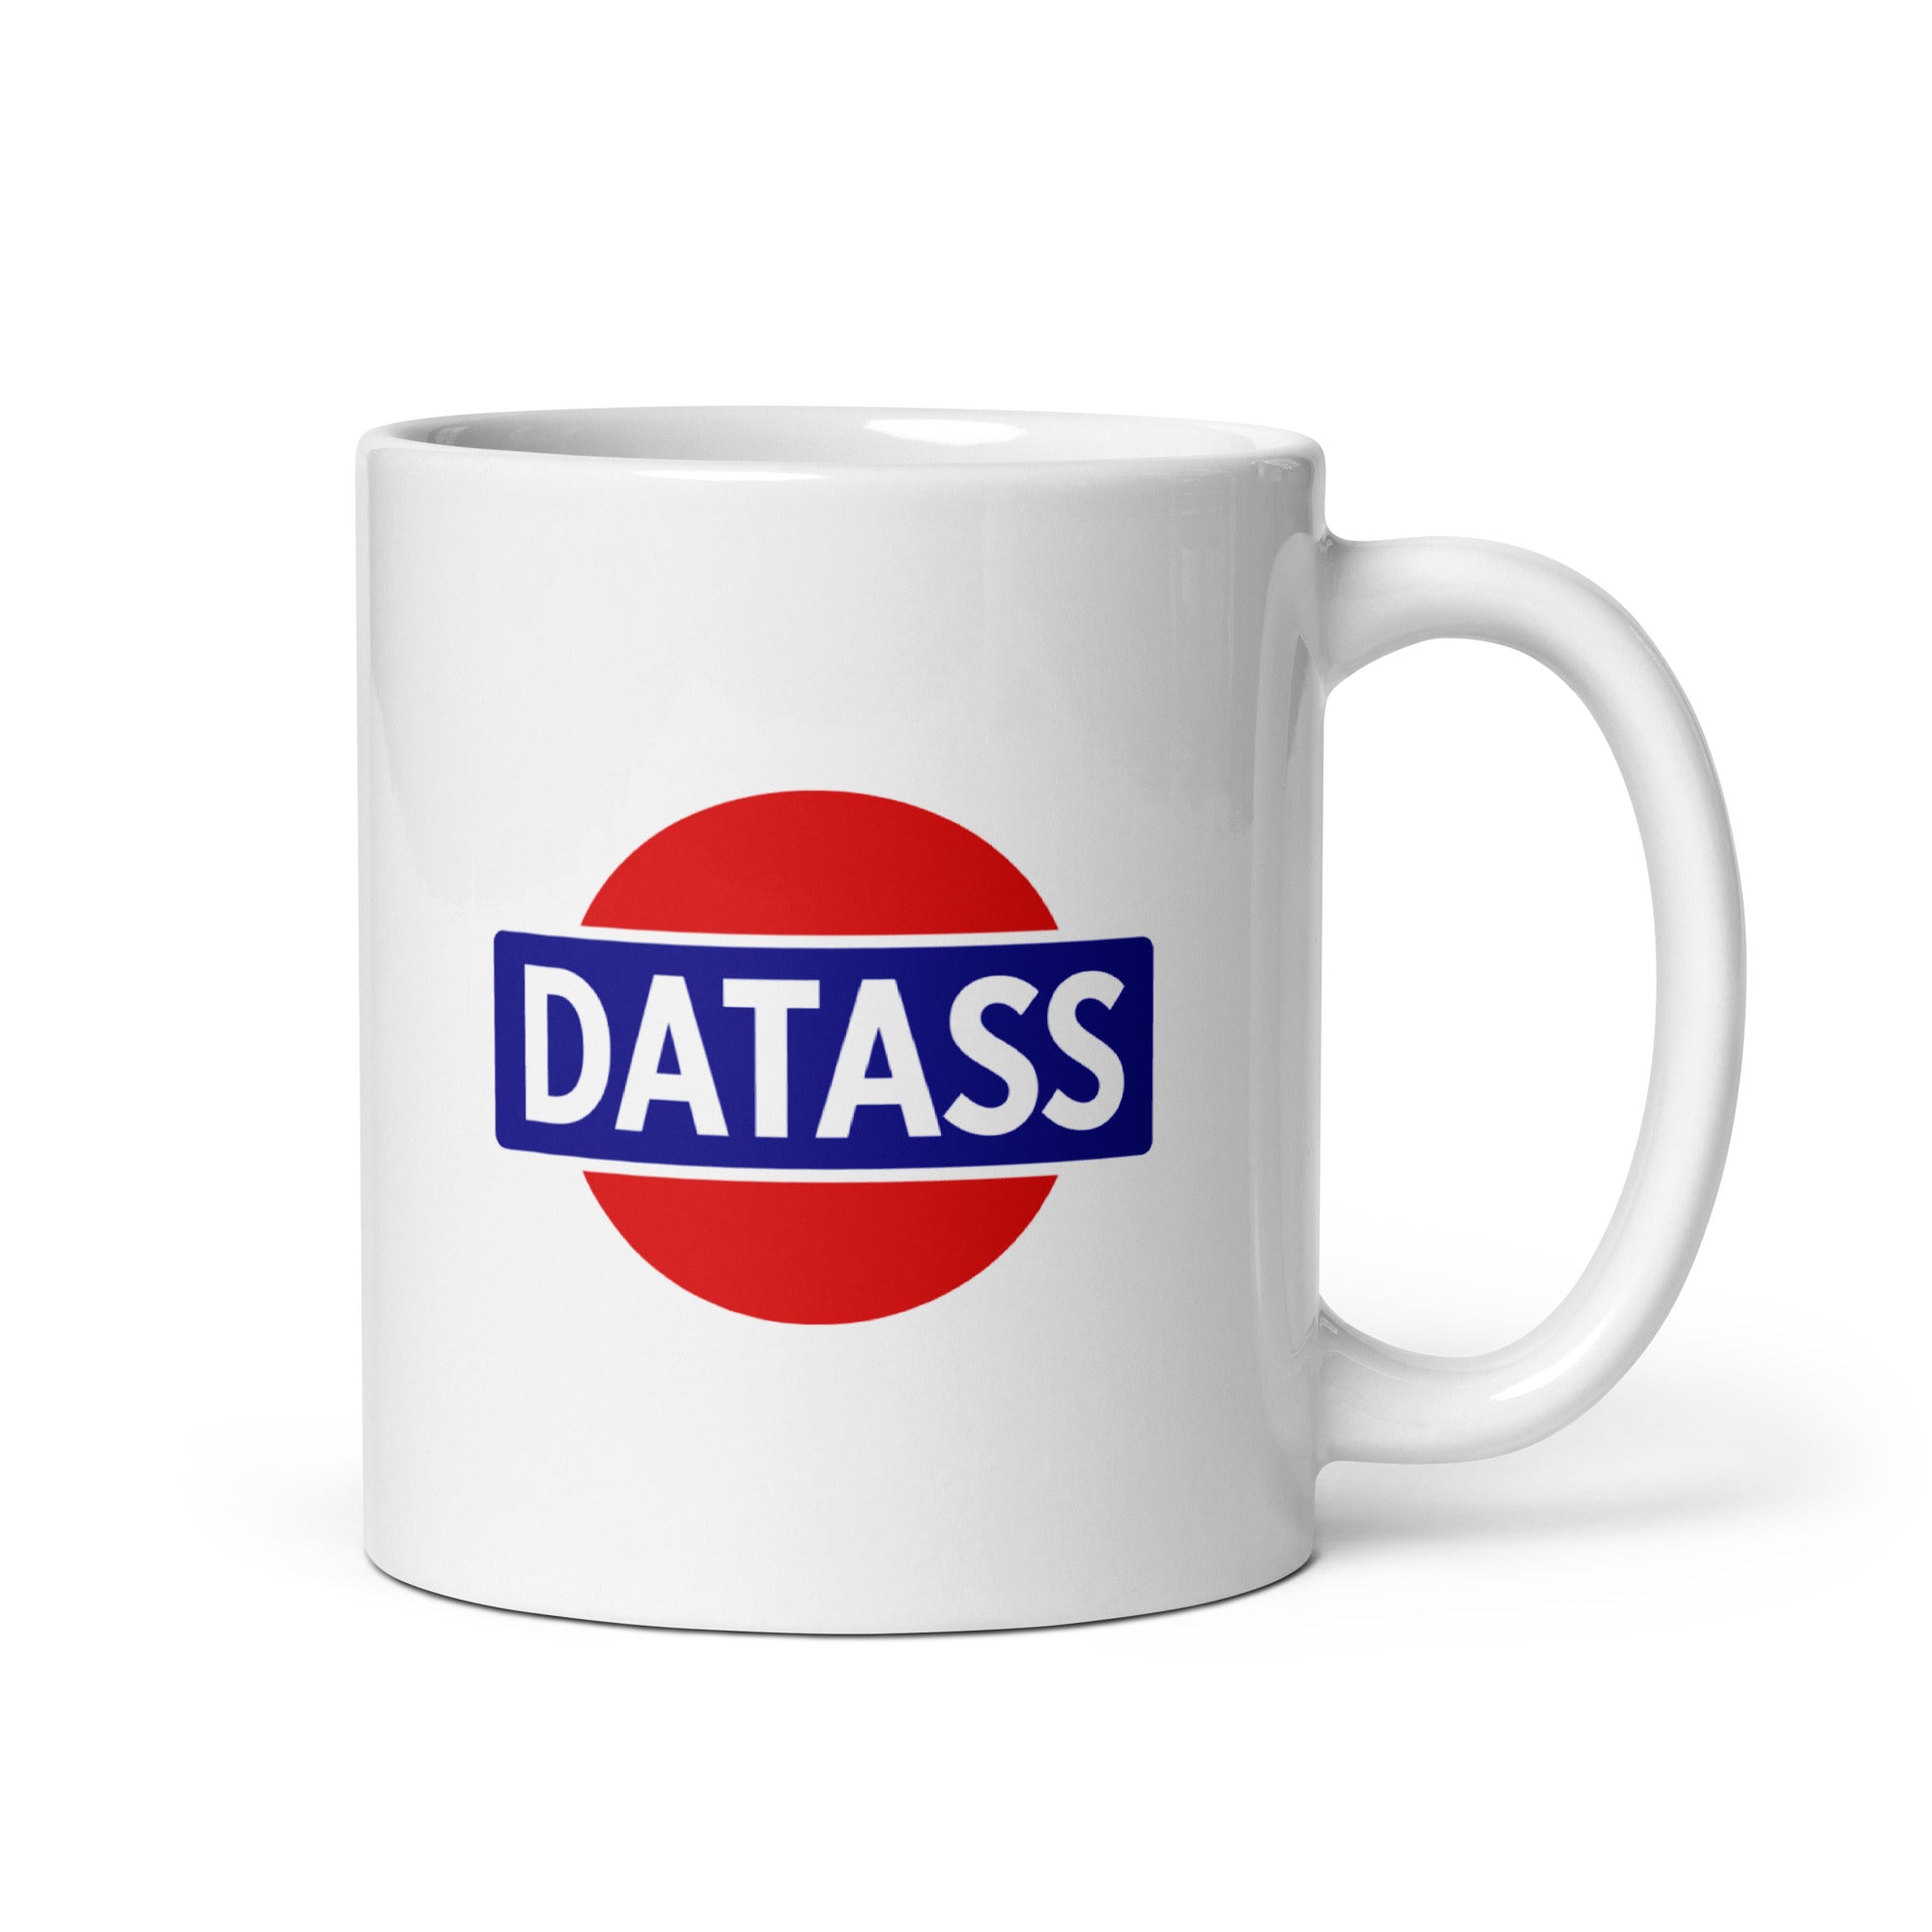 Datass Mug